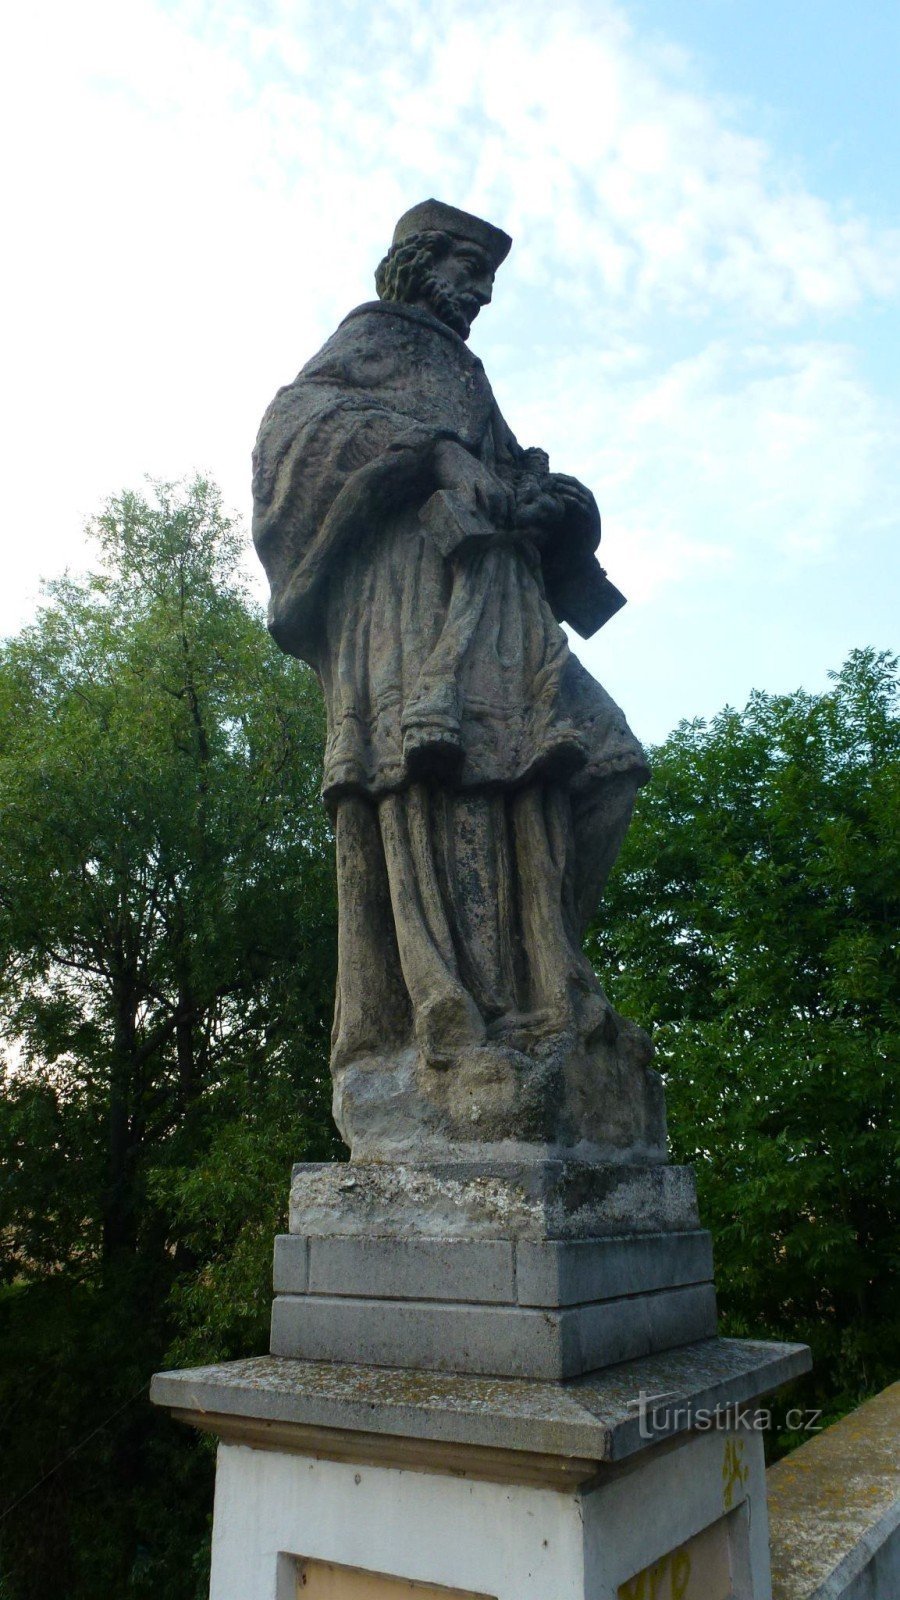 a Nepomuki Szent János szobrot a malomhajtás hídjáról a hídra helyezték át.